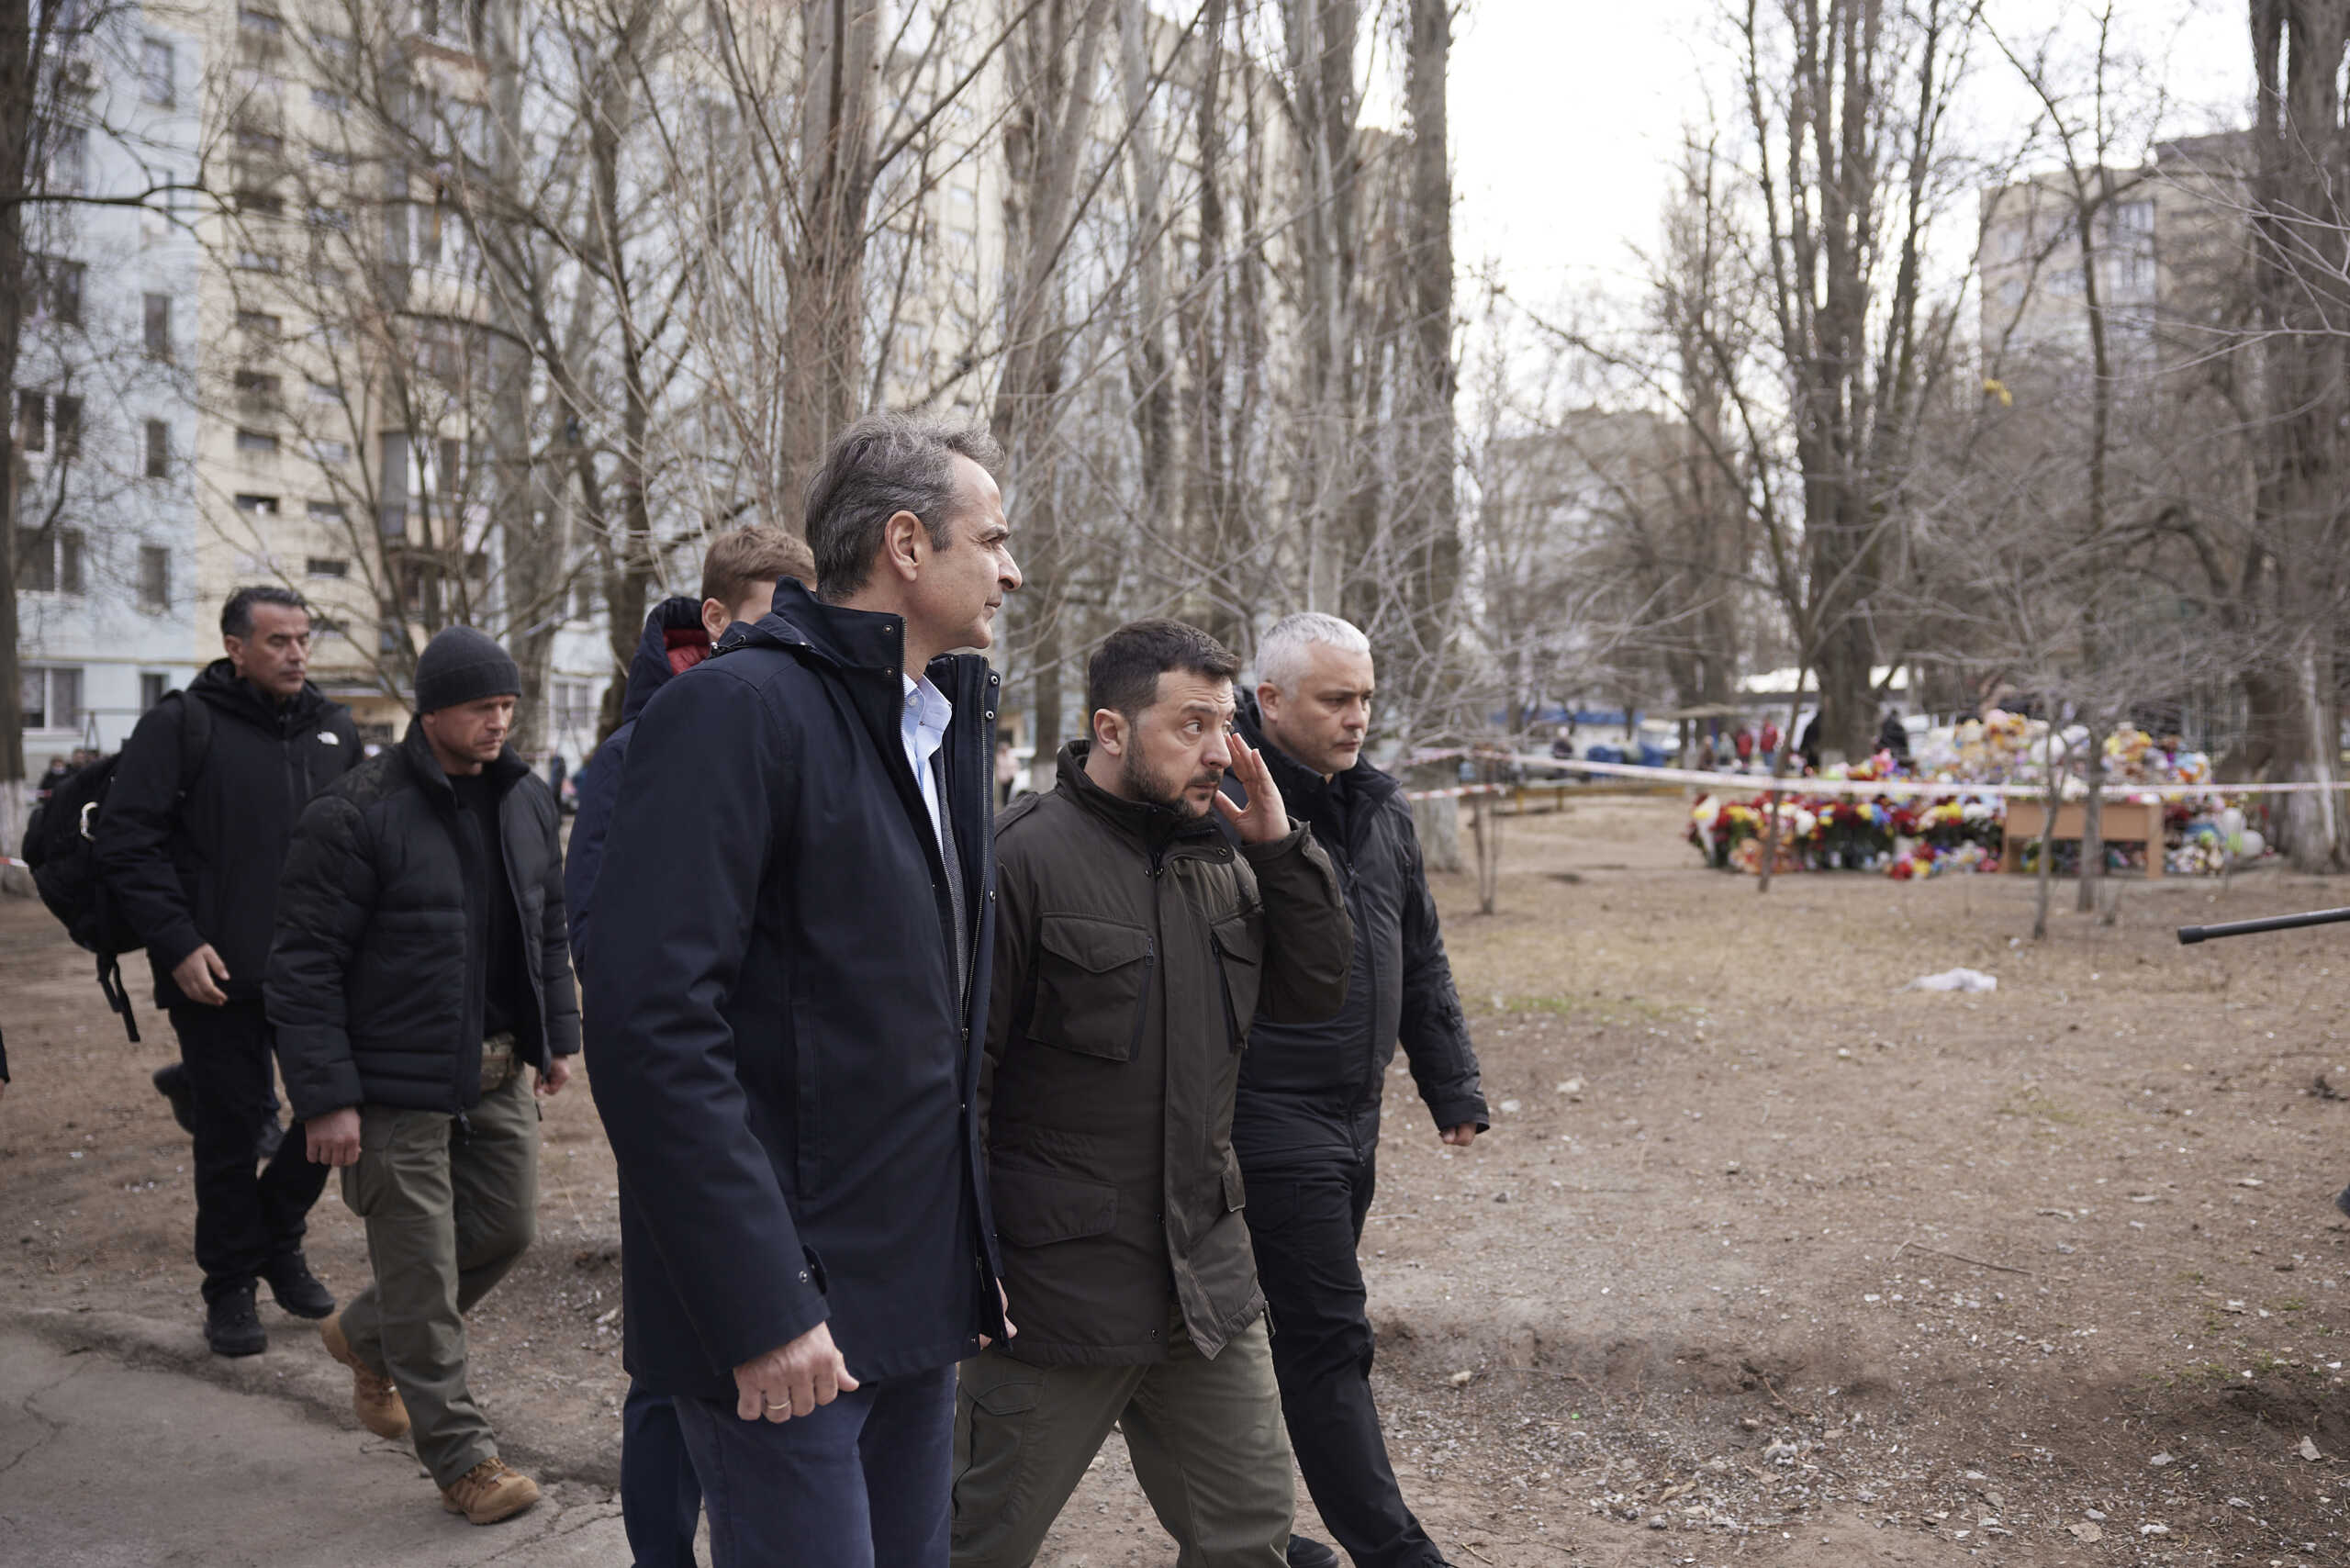 Ζελένσκι για την έκρηξη στην Οδησσό: «Πρέπει να είσαι άρρωστος για να χτυπήσεις κοντά στον Έλληνα πρωθυπουργό»